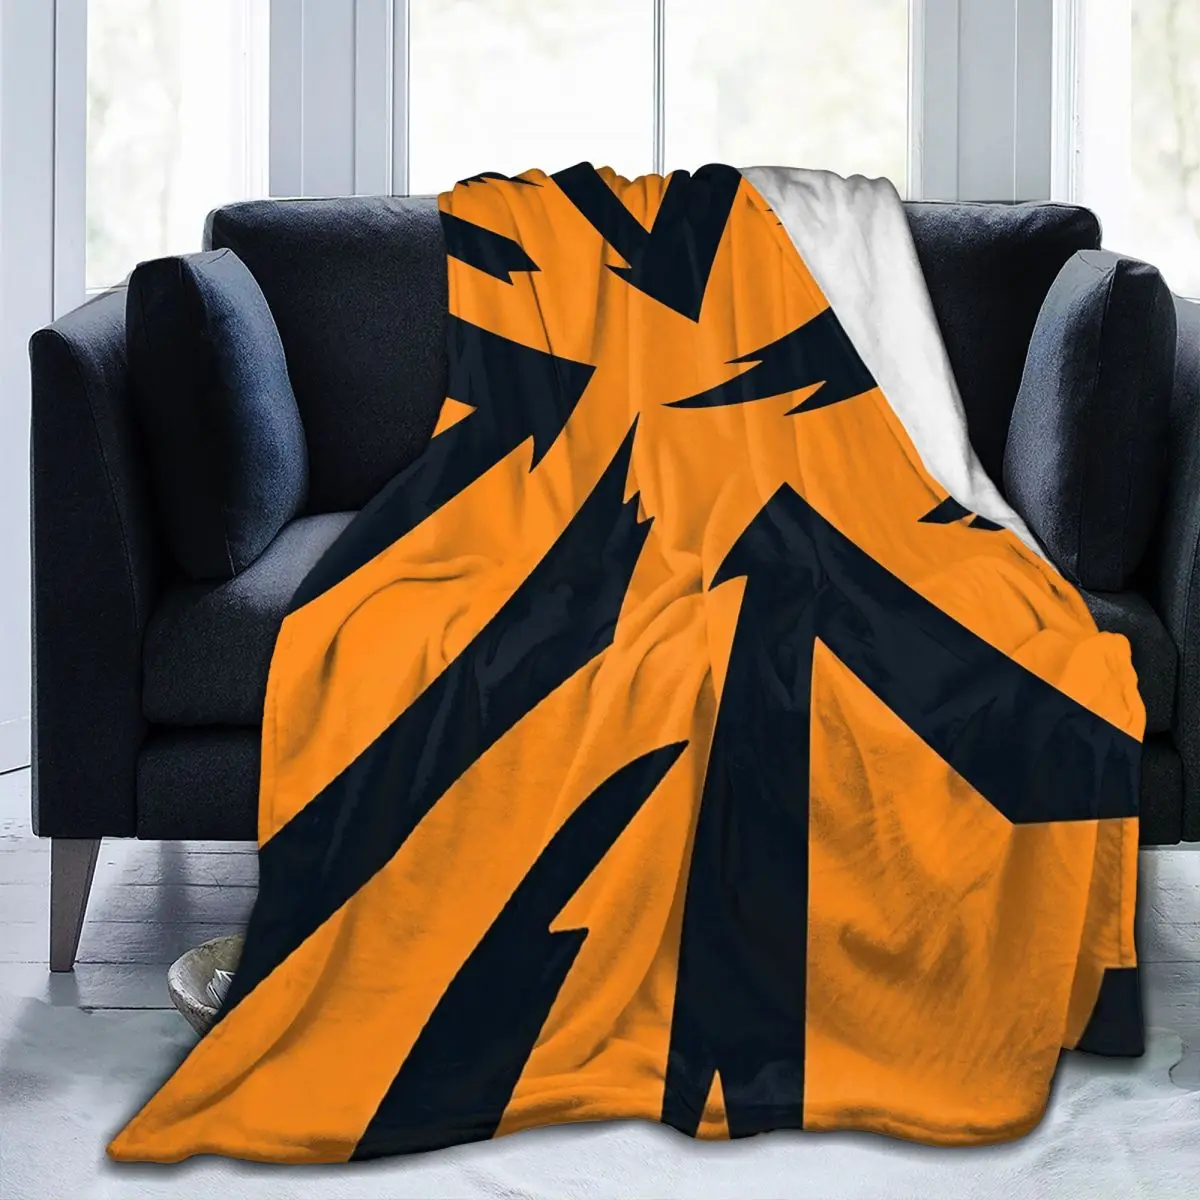 

Одеяло с рисунком Arcanine, одеяло, персонализированное, теплый, хороший подарок, антипилинг